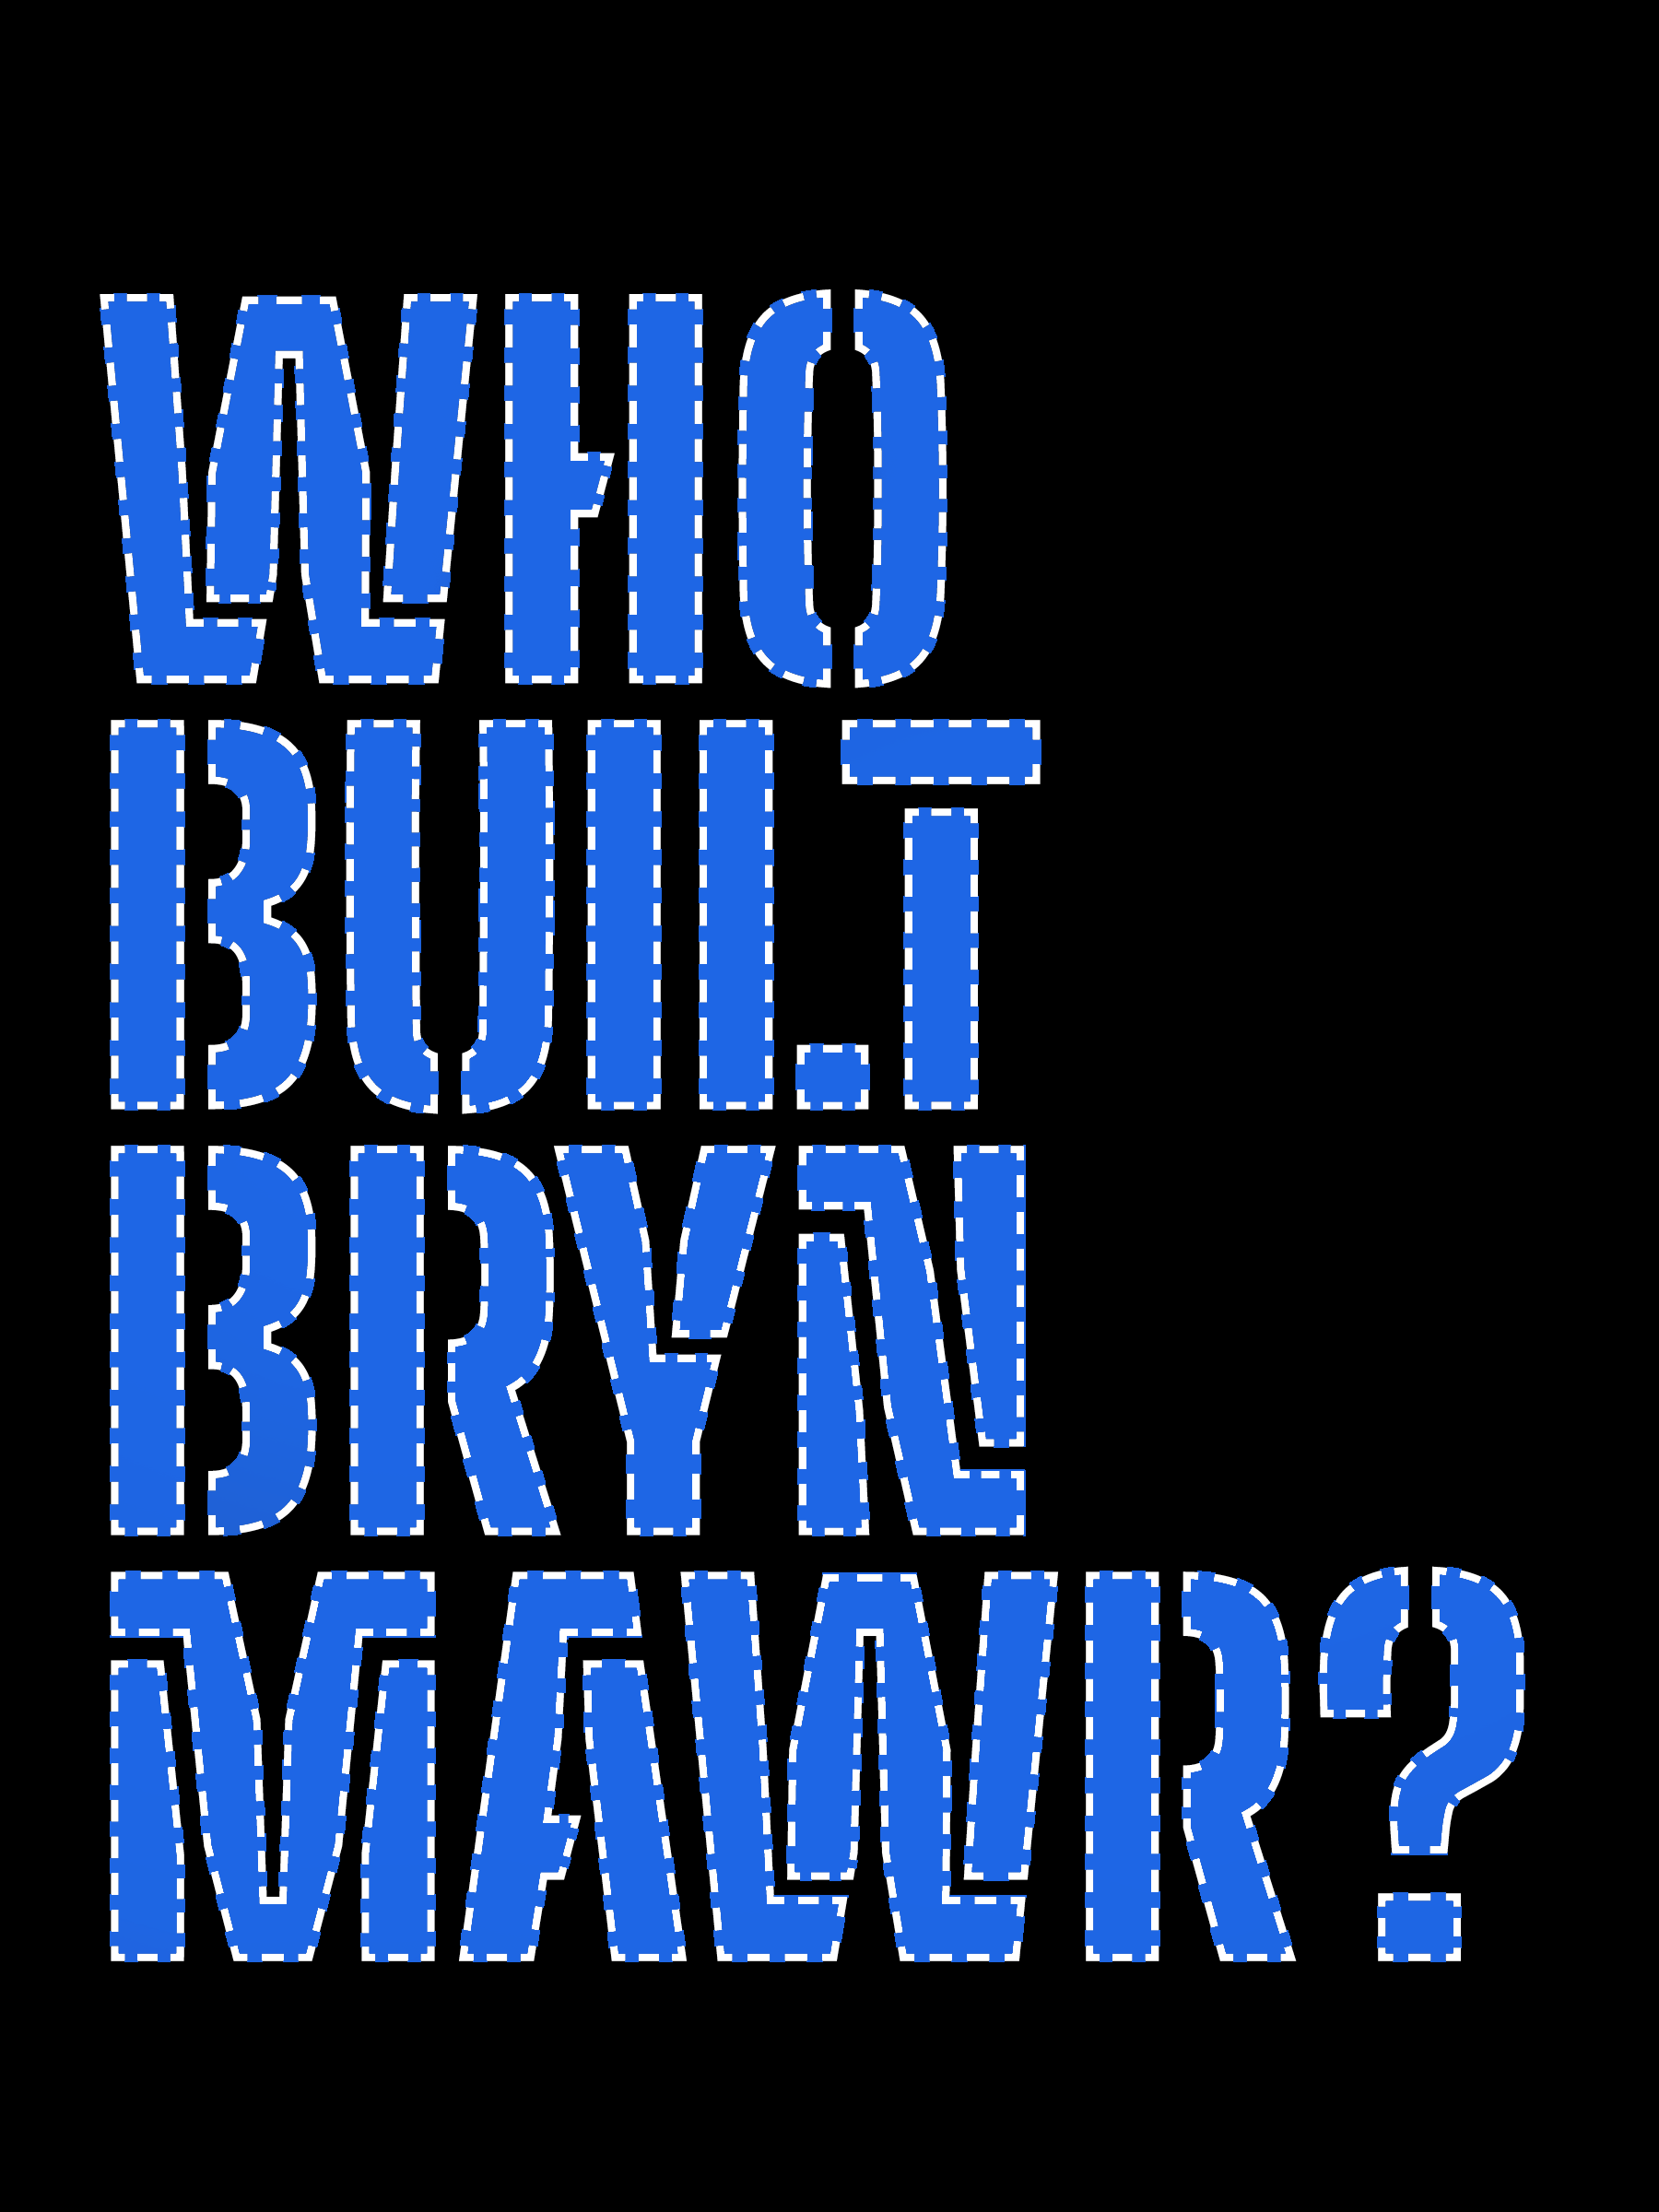 Who built Bryn Mawr?